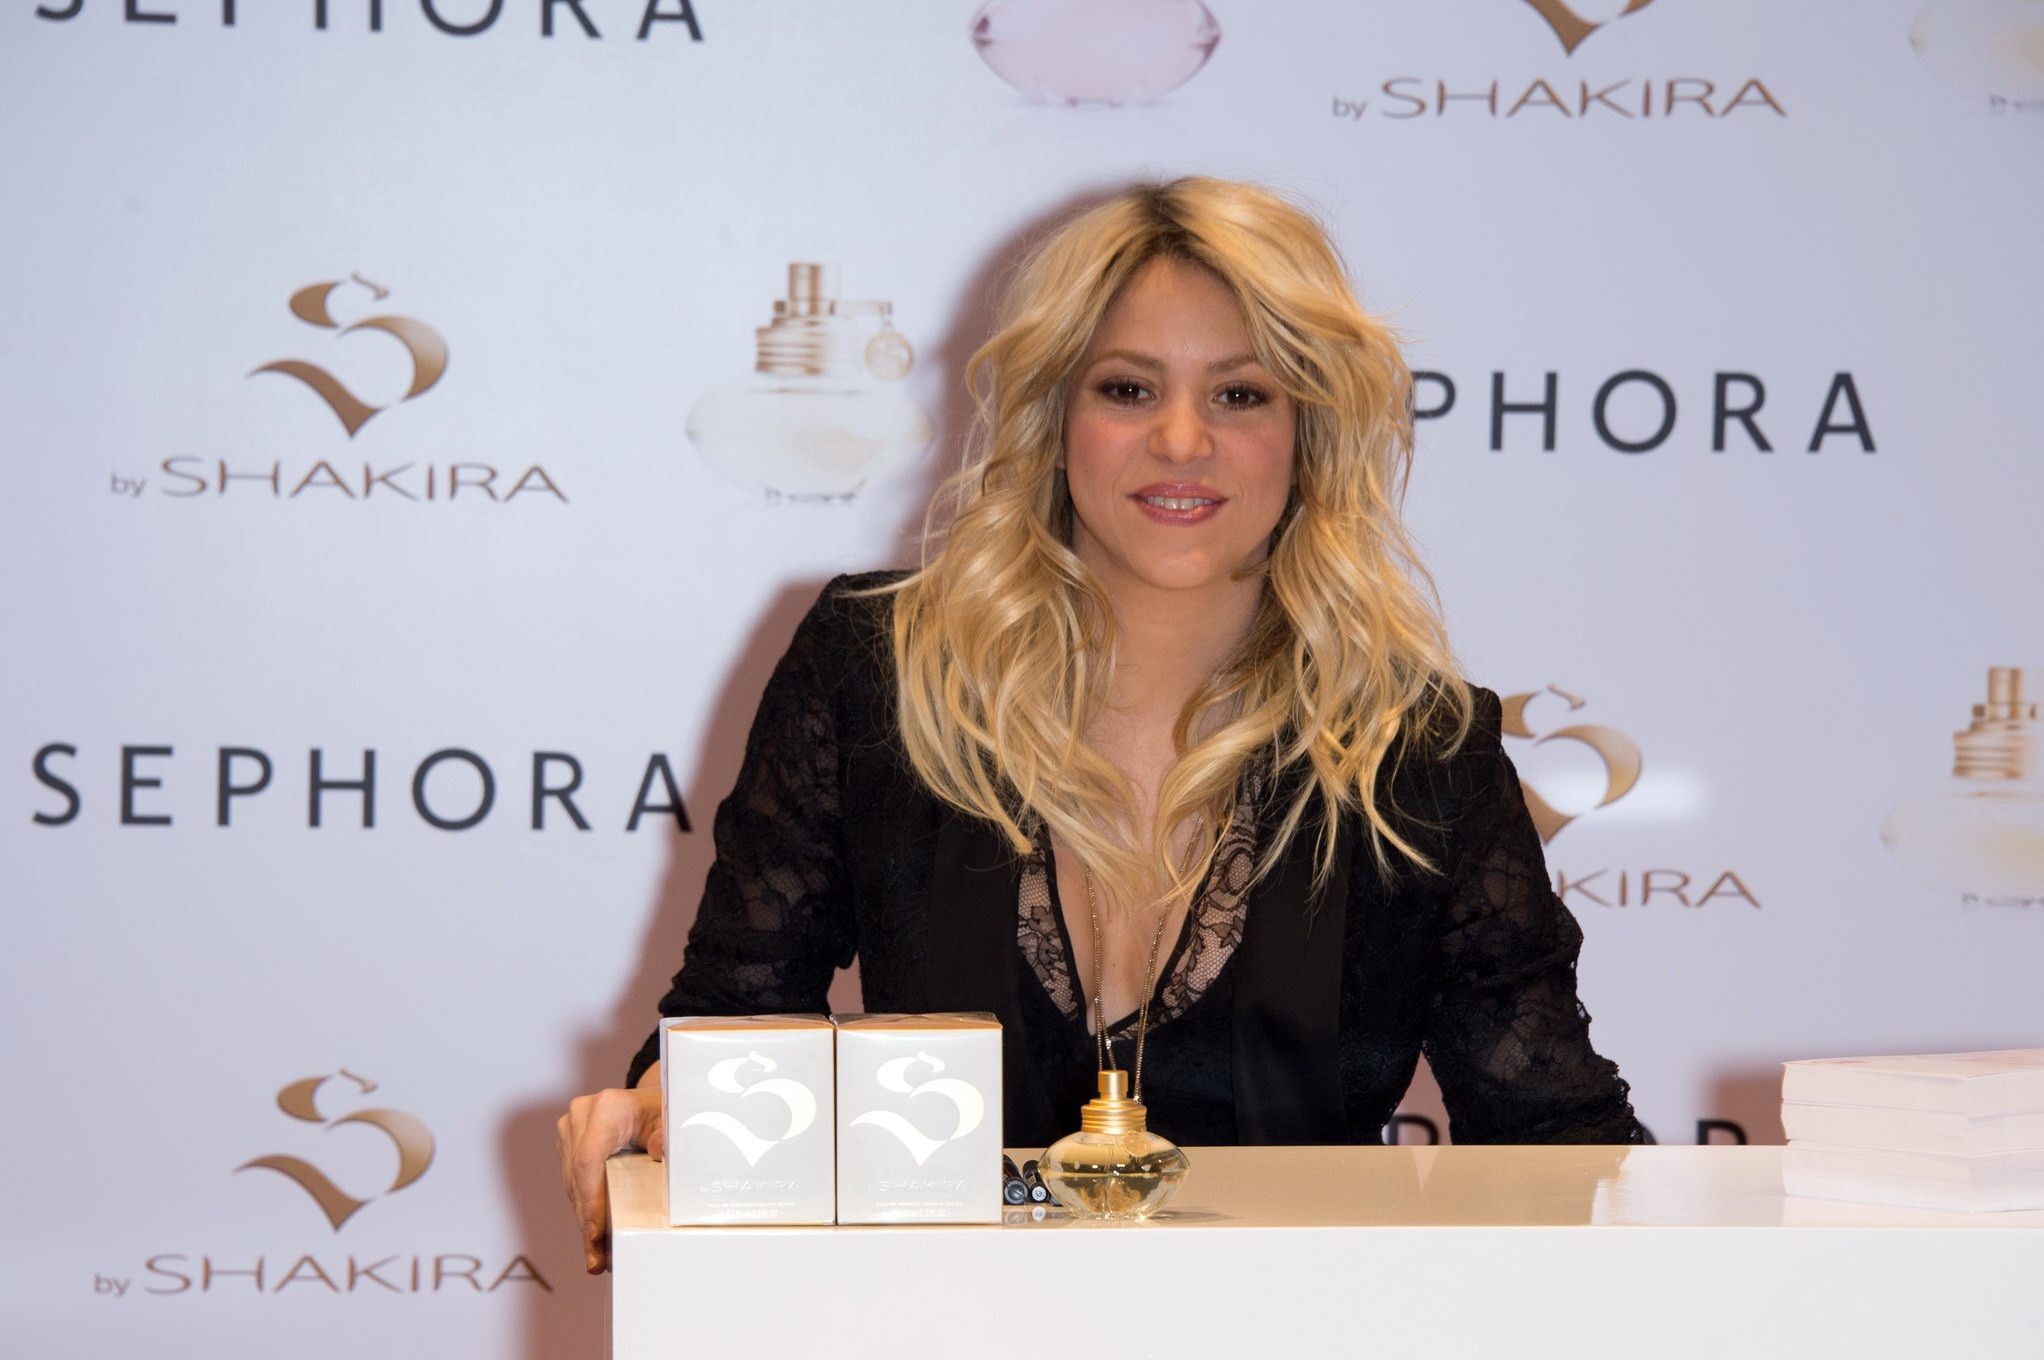 Shakira che mostra la scollatura enorme al lancio del profumo 's da shakira' a sephora in
 #75236953